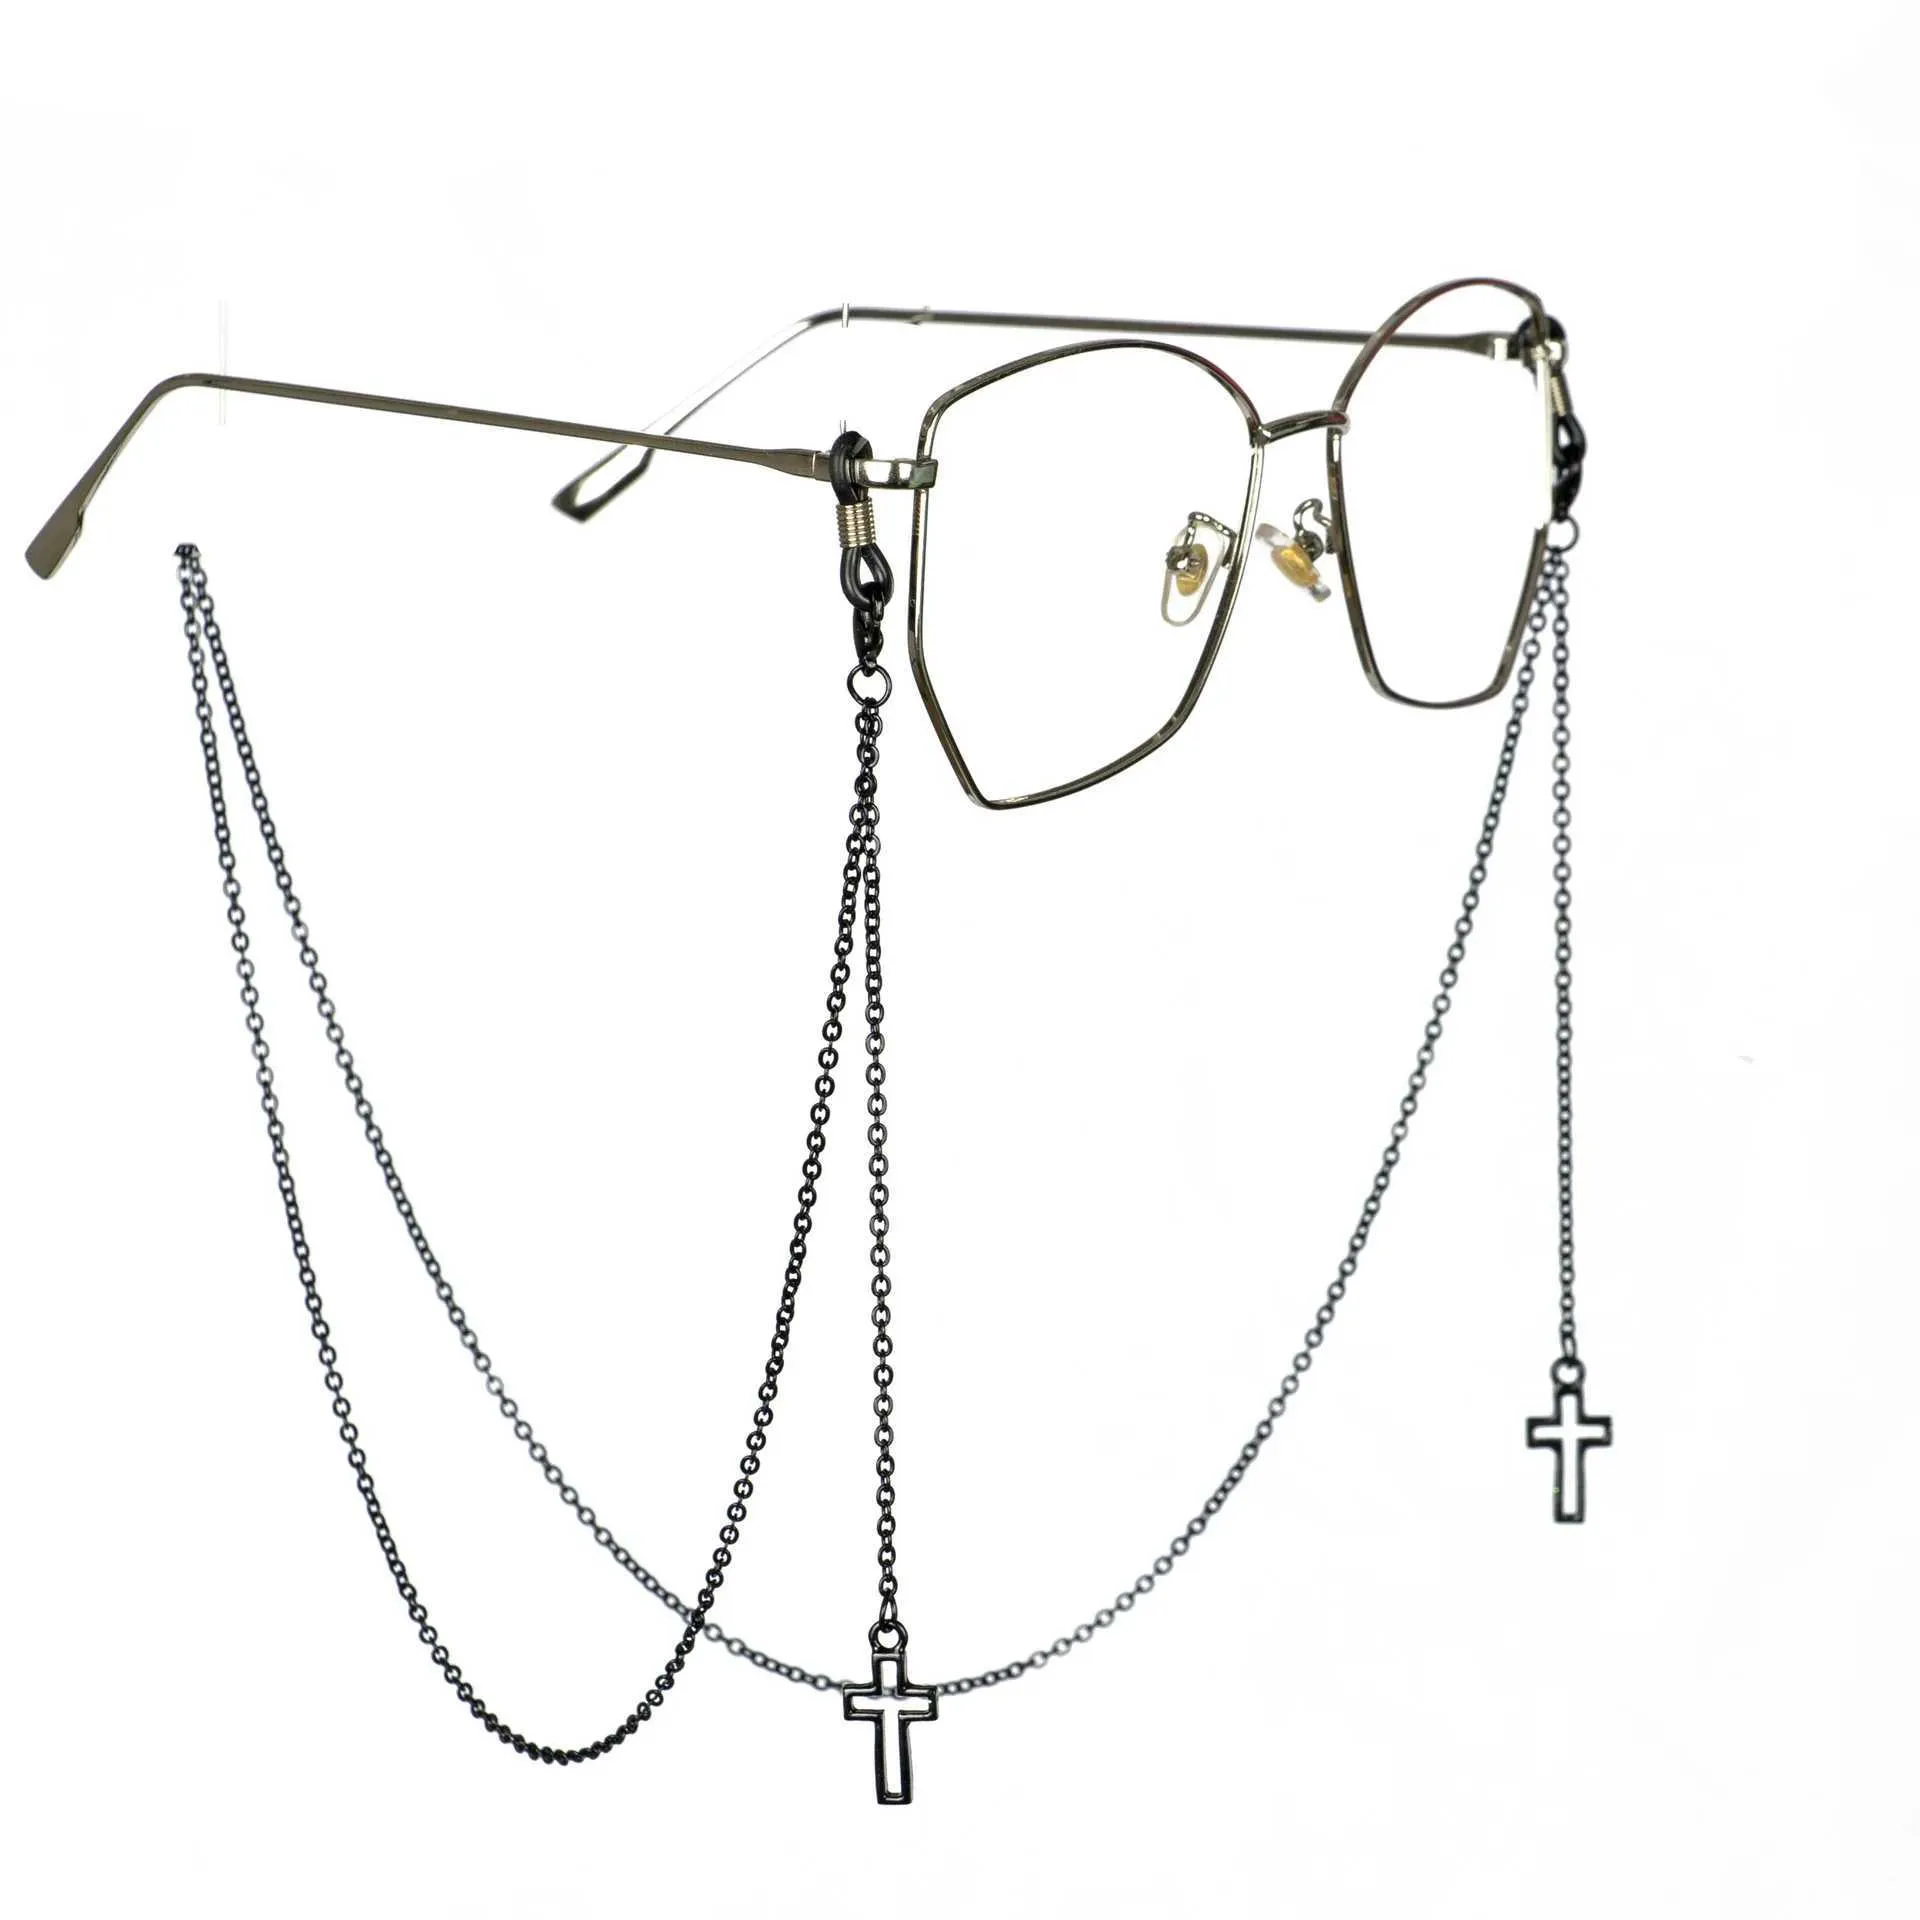 Lunettes chaînes de lunettes à la mode chaîne de lunettes de croix verres de soleil verres de chaîne métallique